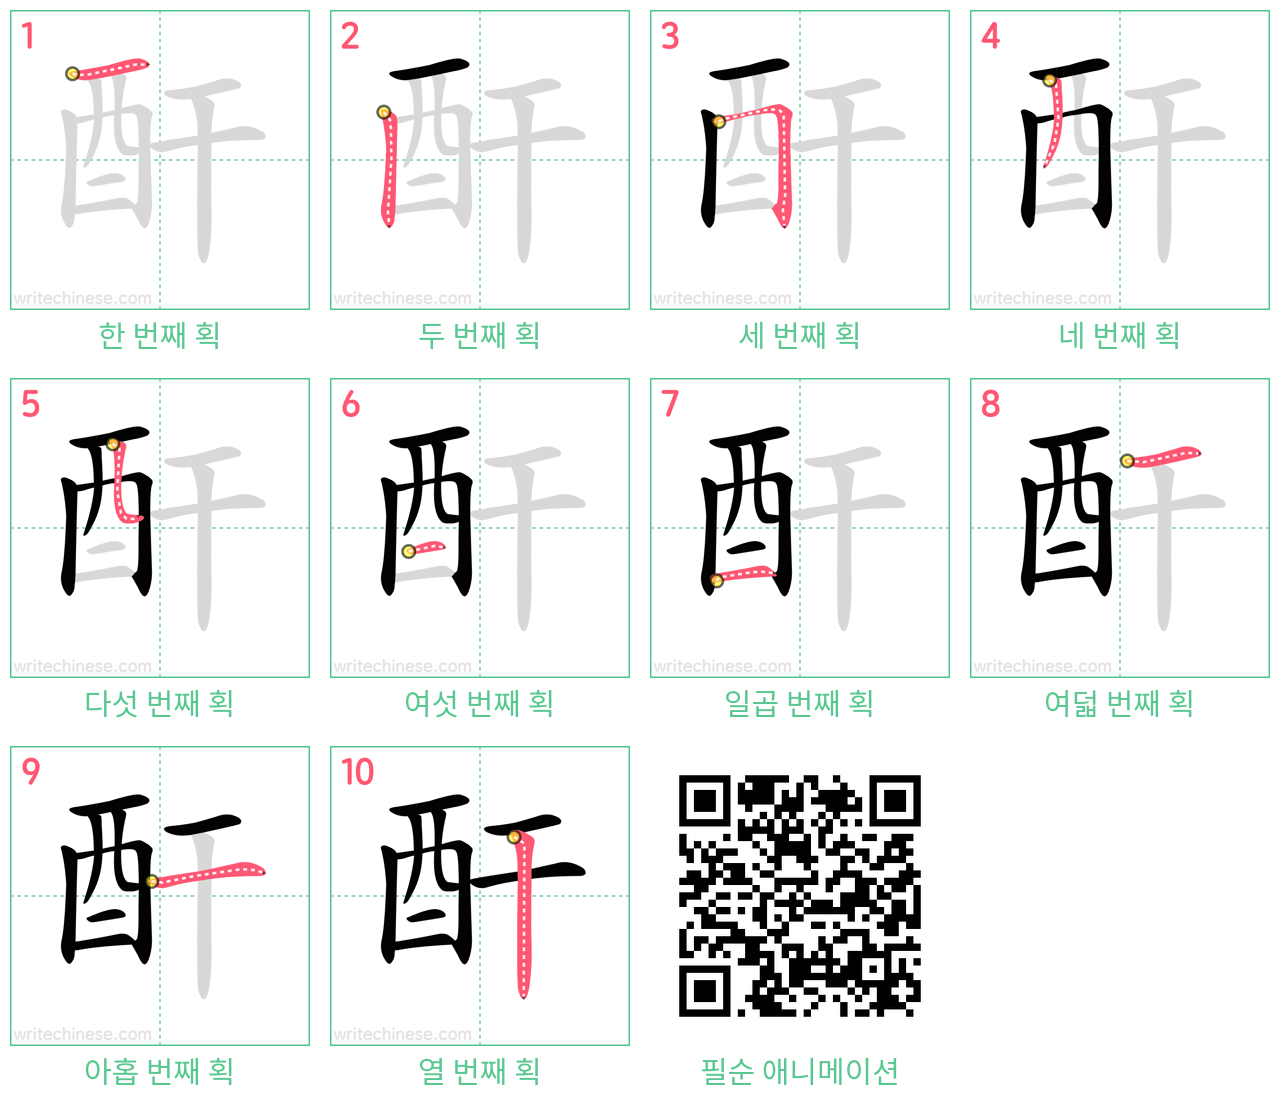 酐 step-by-step stroke order diagrams